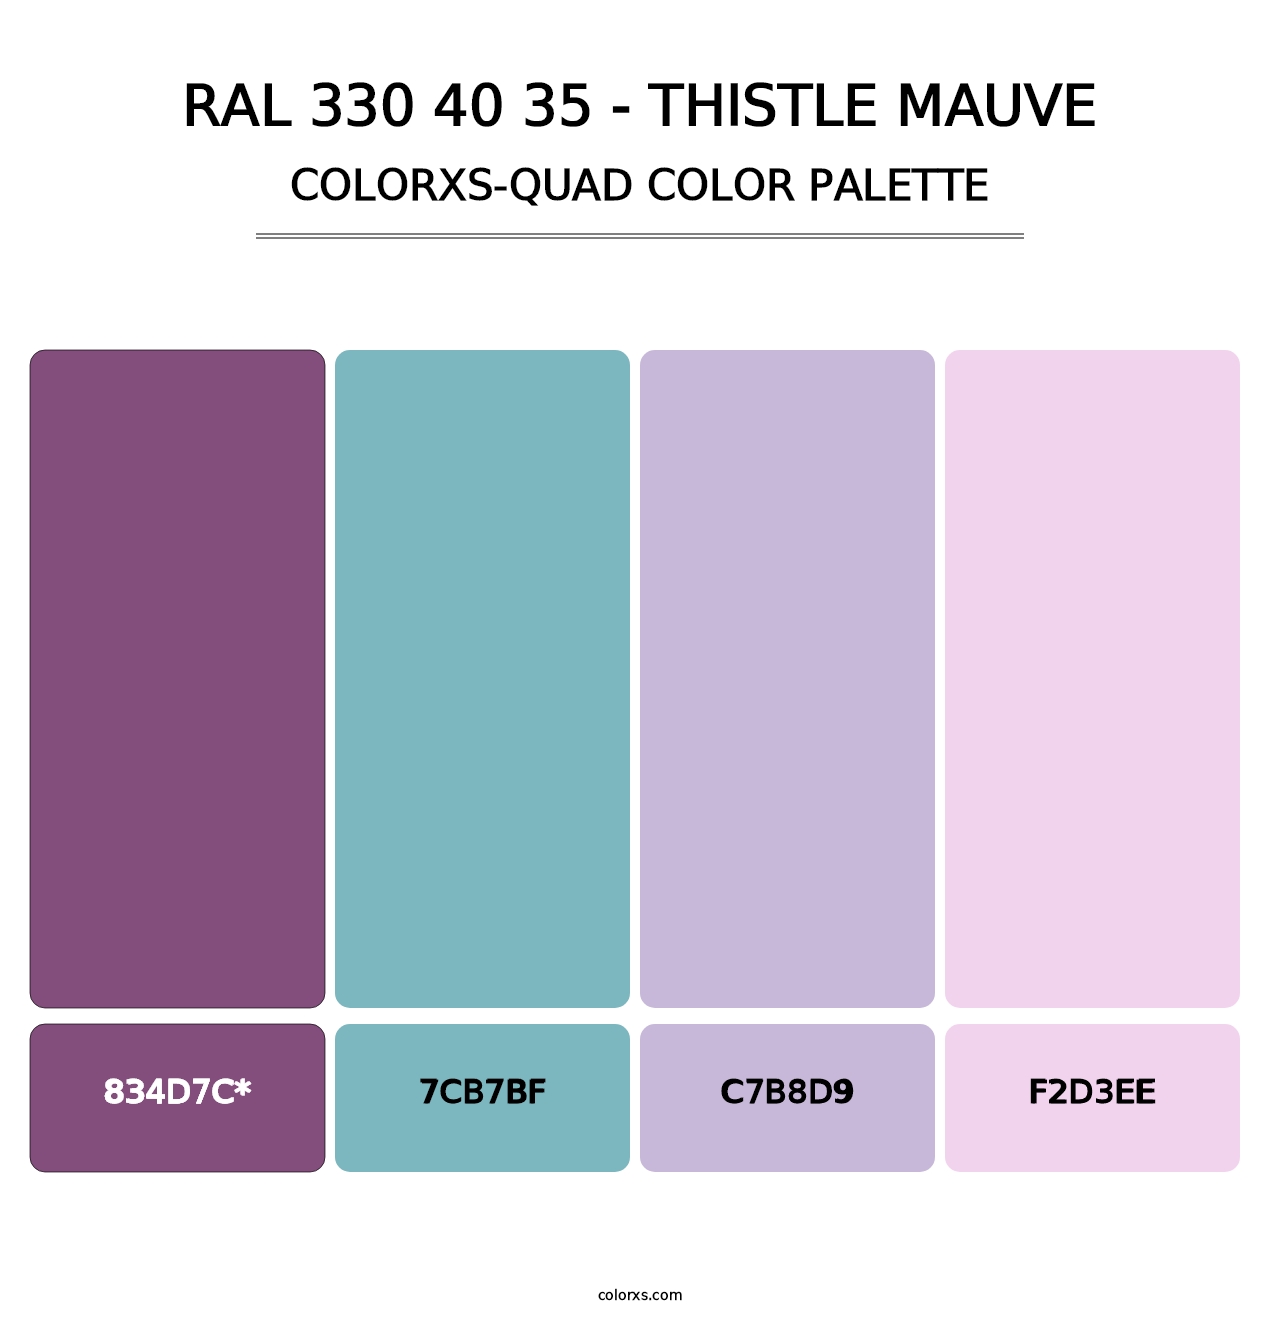 RAL 330 40 35 - Thistle Mauve - Colorxs Quad Palette